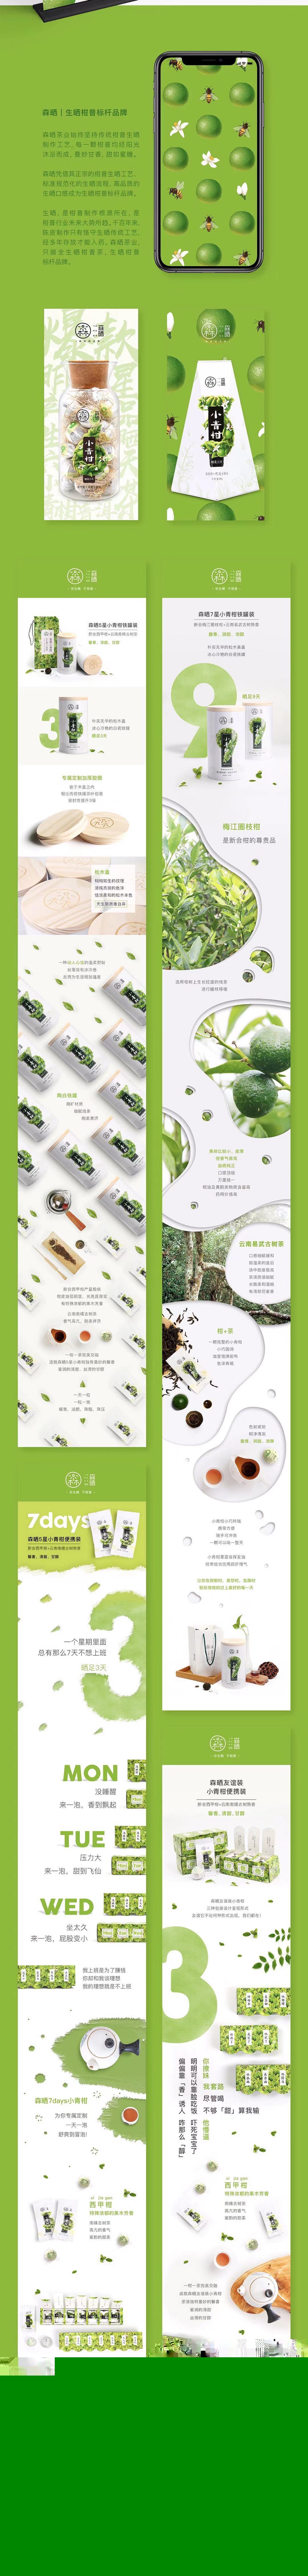 茶叶品牌定位-森晒图2